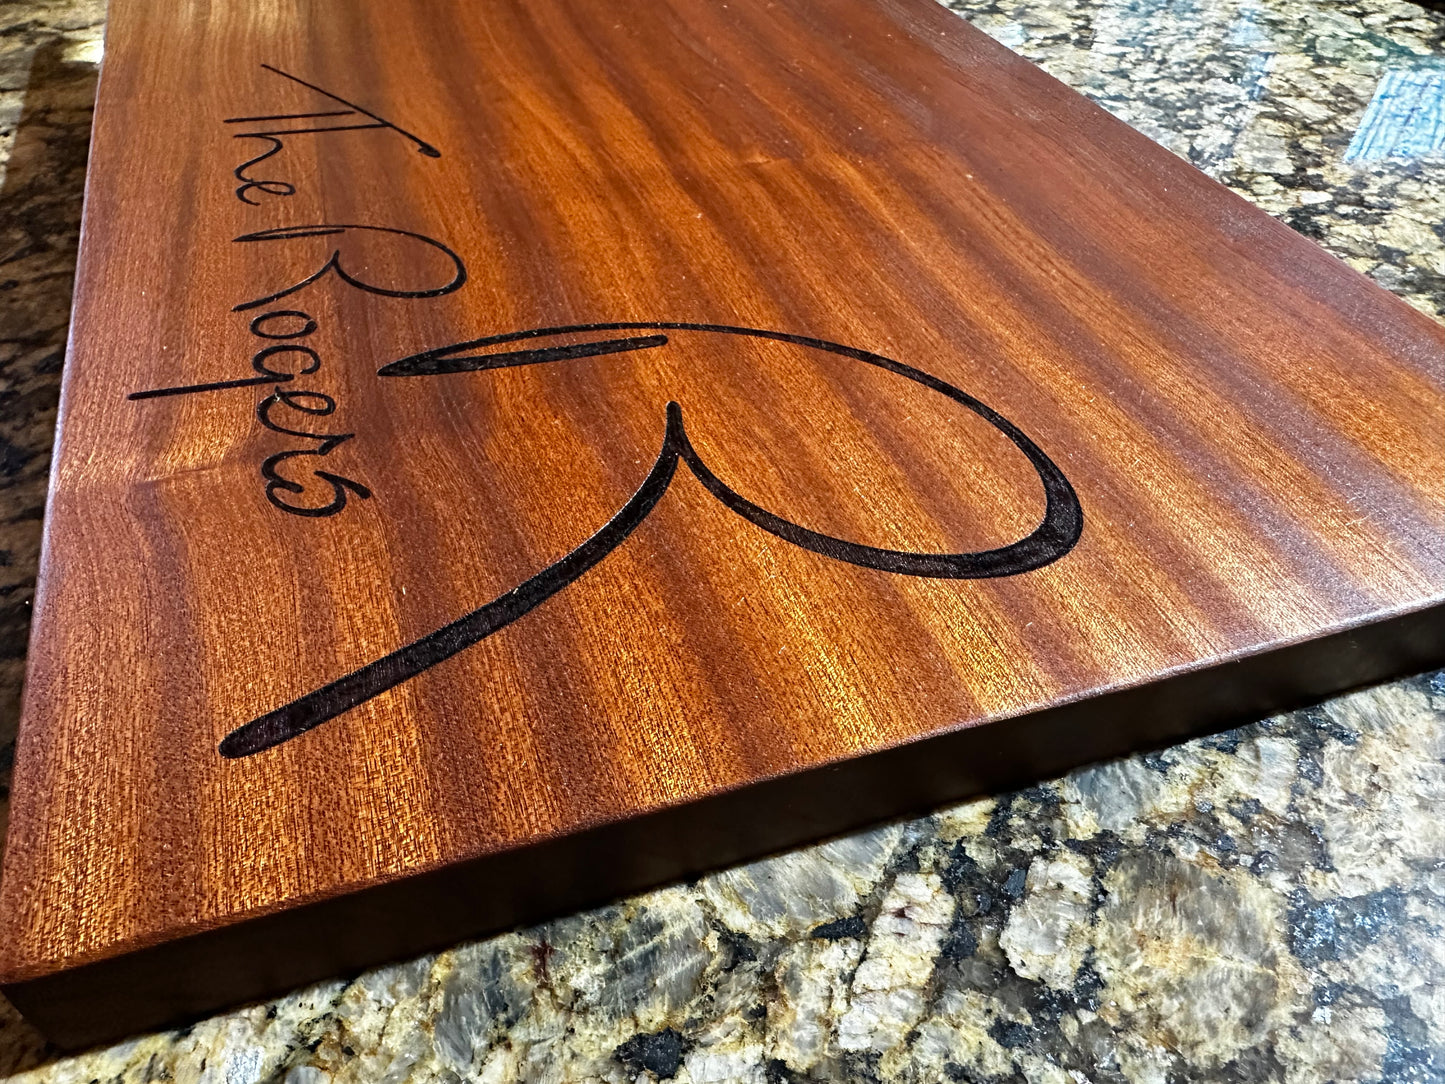 Custom 16" x 12" Sapele Charcuterie Board - Cutting Board - Serving Board